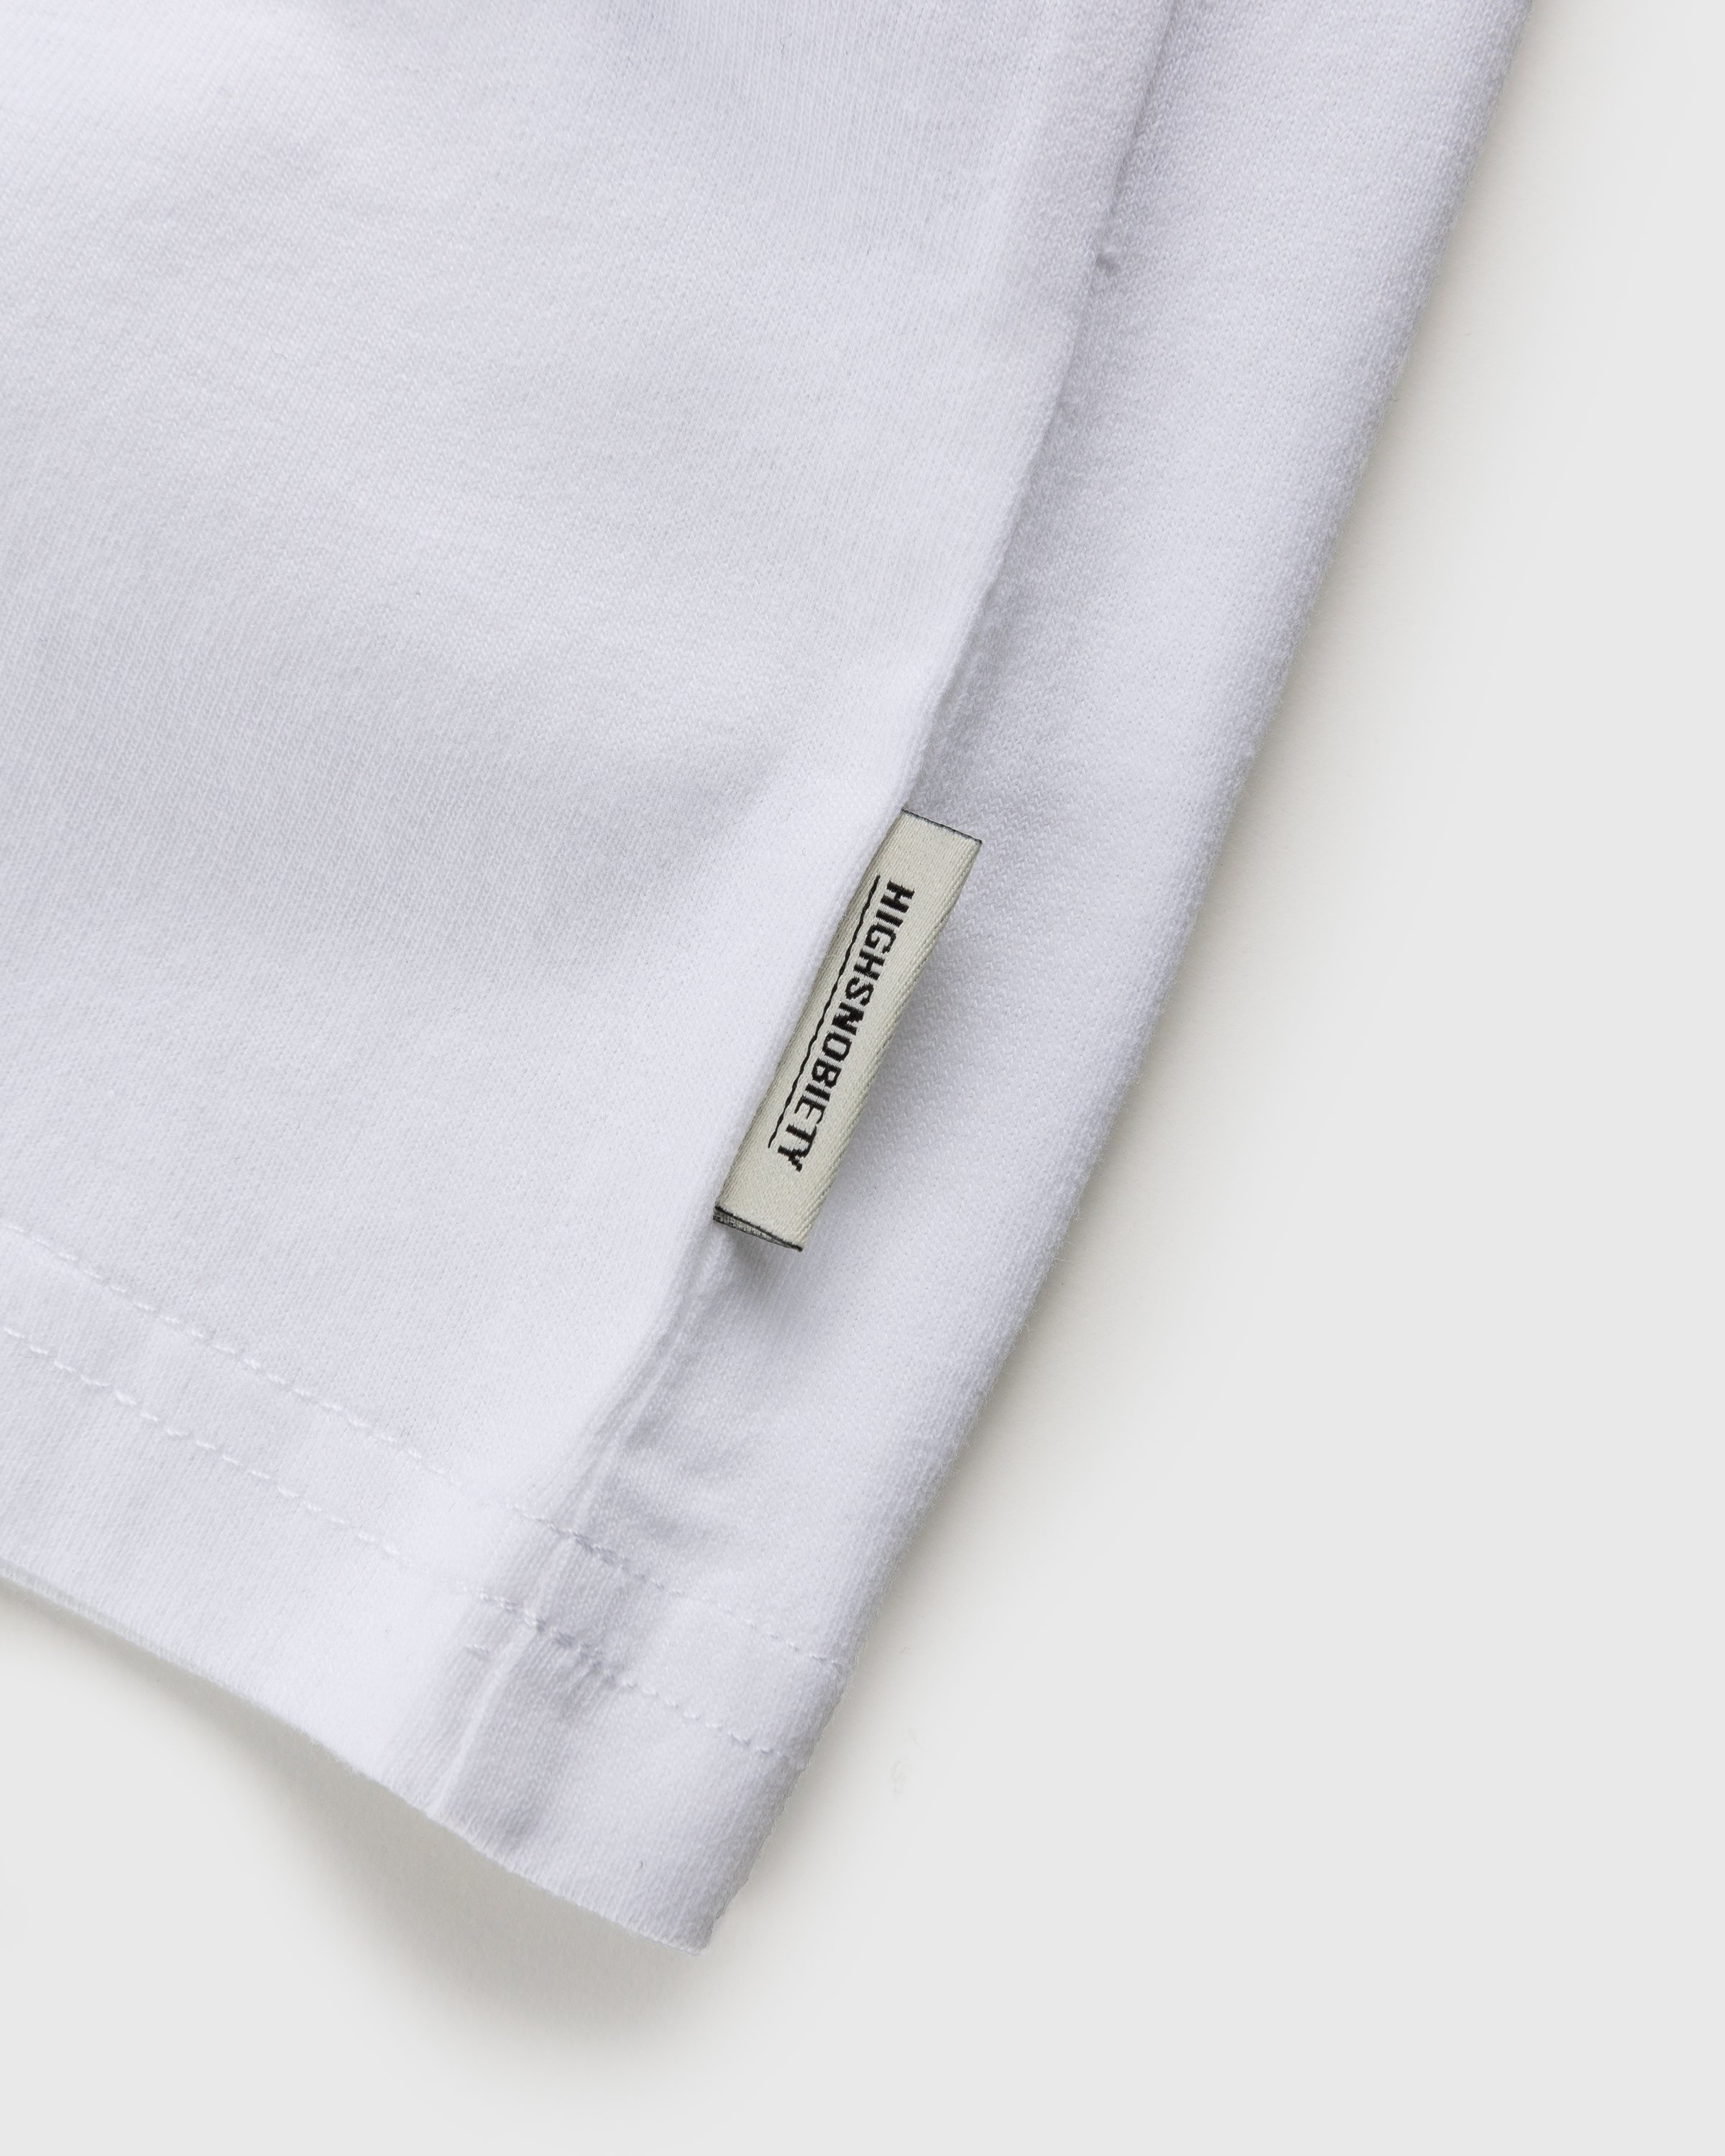 RUF x Highsnobiety - Turbocharged T-Shirt White - Clothing - White - Image 3